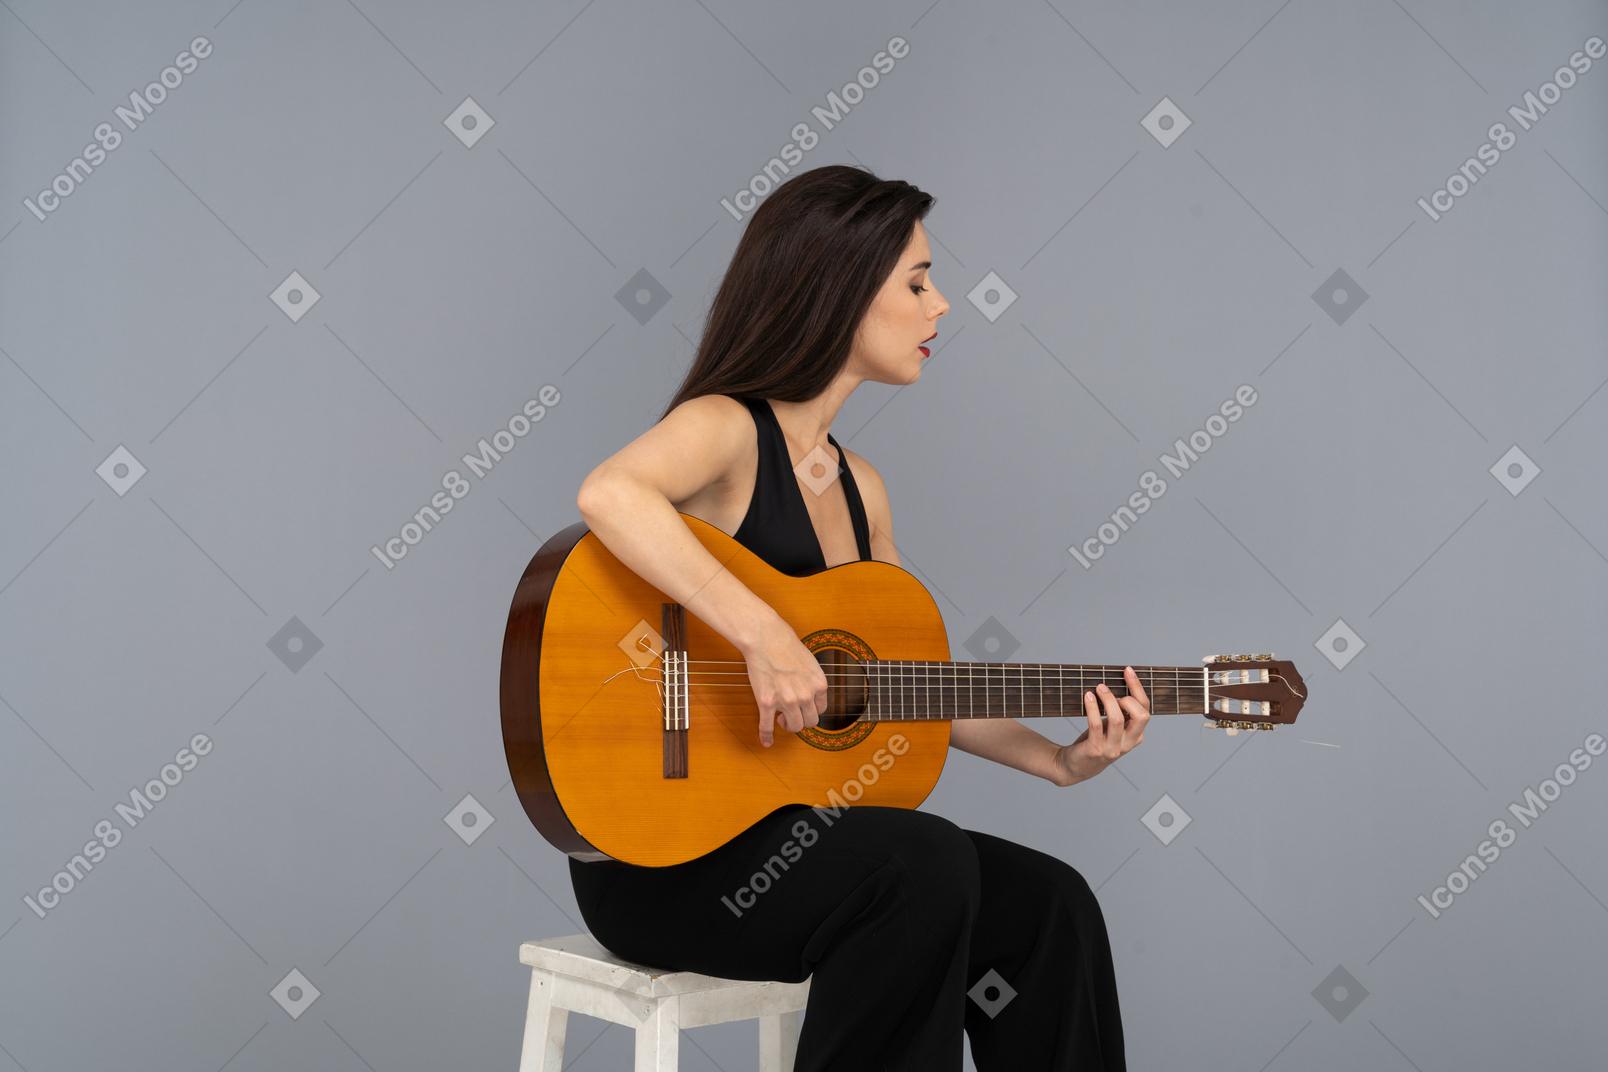 ギターを弾く黒いスーツを着て座っている若い女性の4分の3のビュー